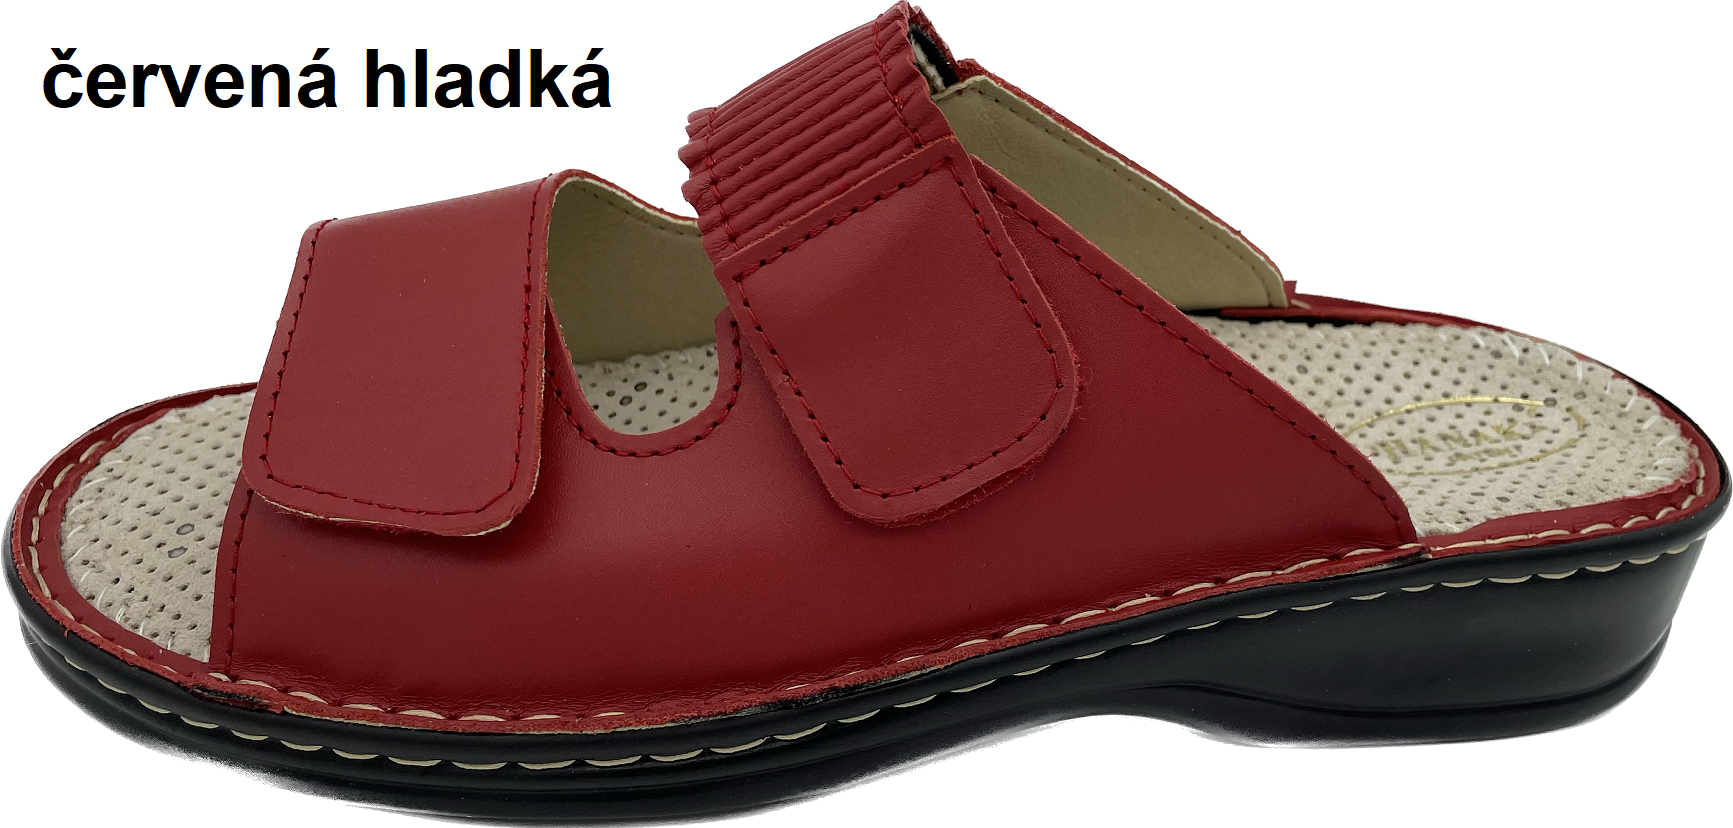 Boty Hanák vzor 304 - černá podešev Barva usně: červená hladká, Velikosti obuvi: 35